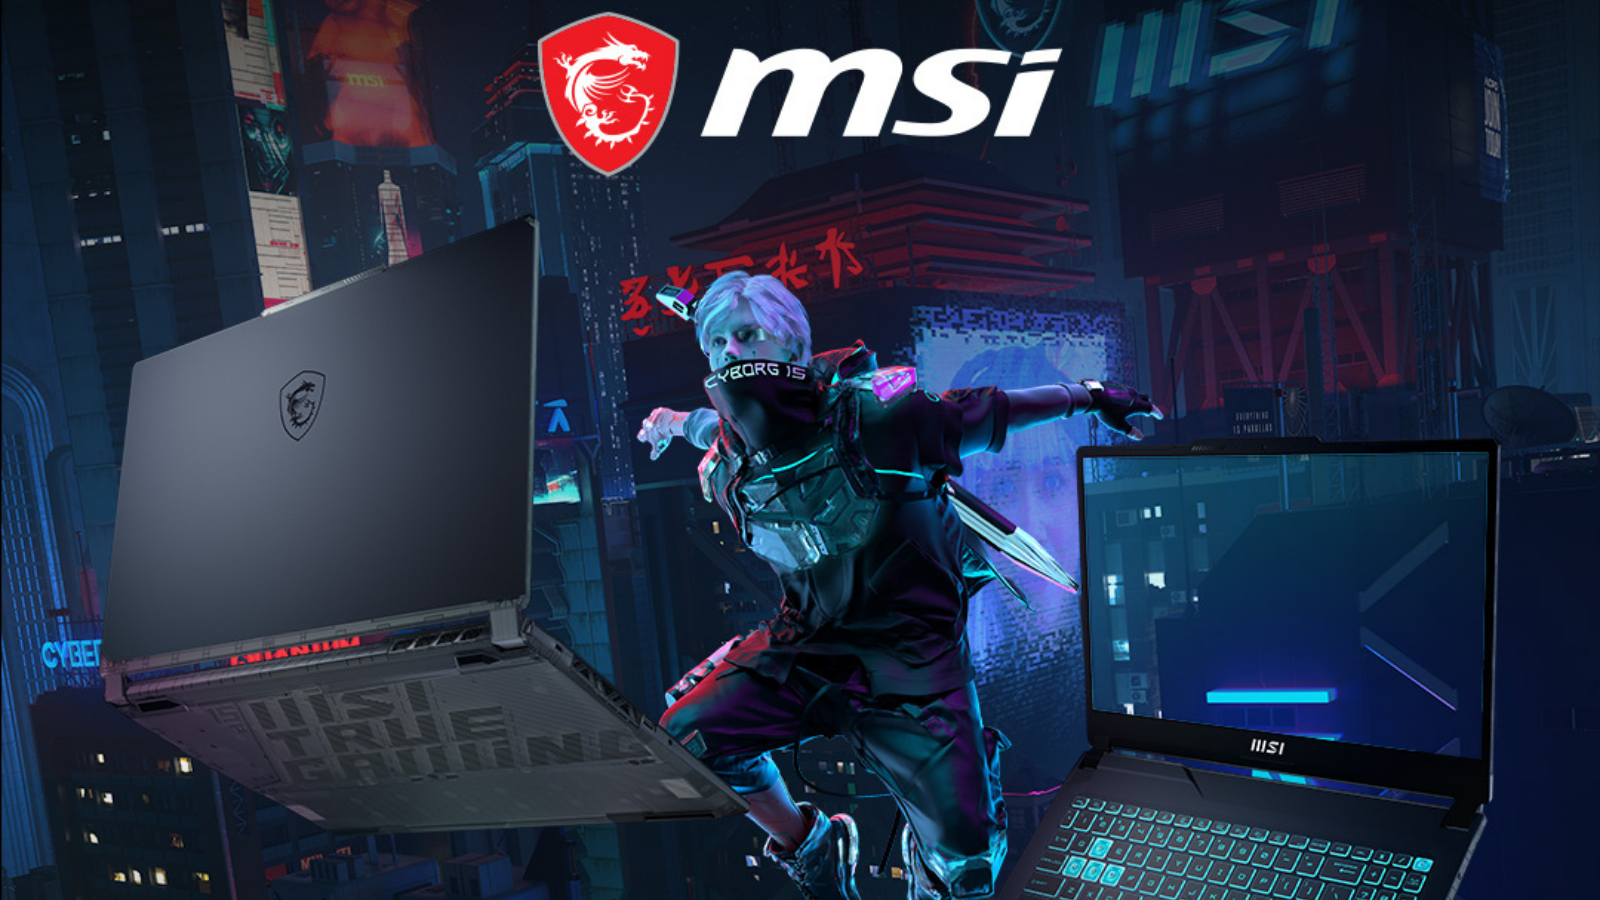 MSI Gaming Laptop Guide